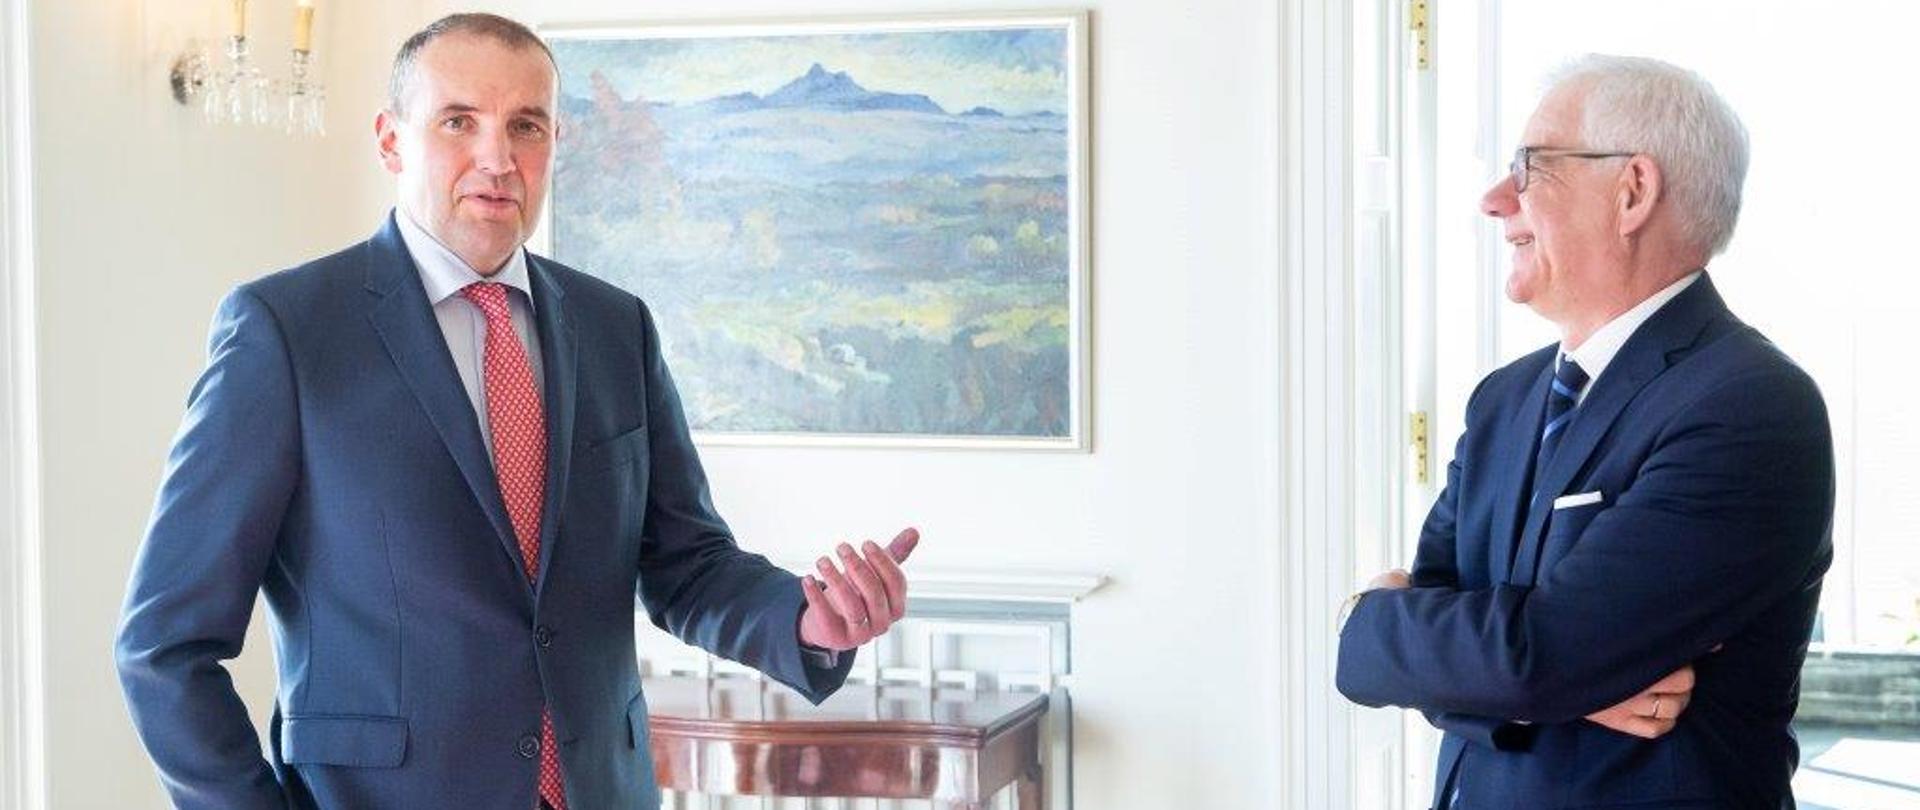 Minister Jacek Czaputowicz visits Iceland